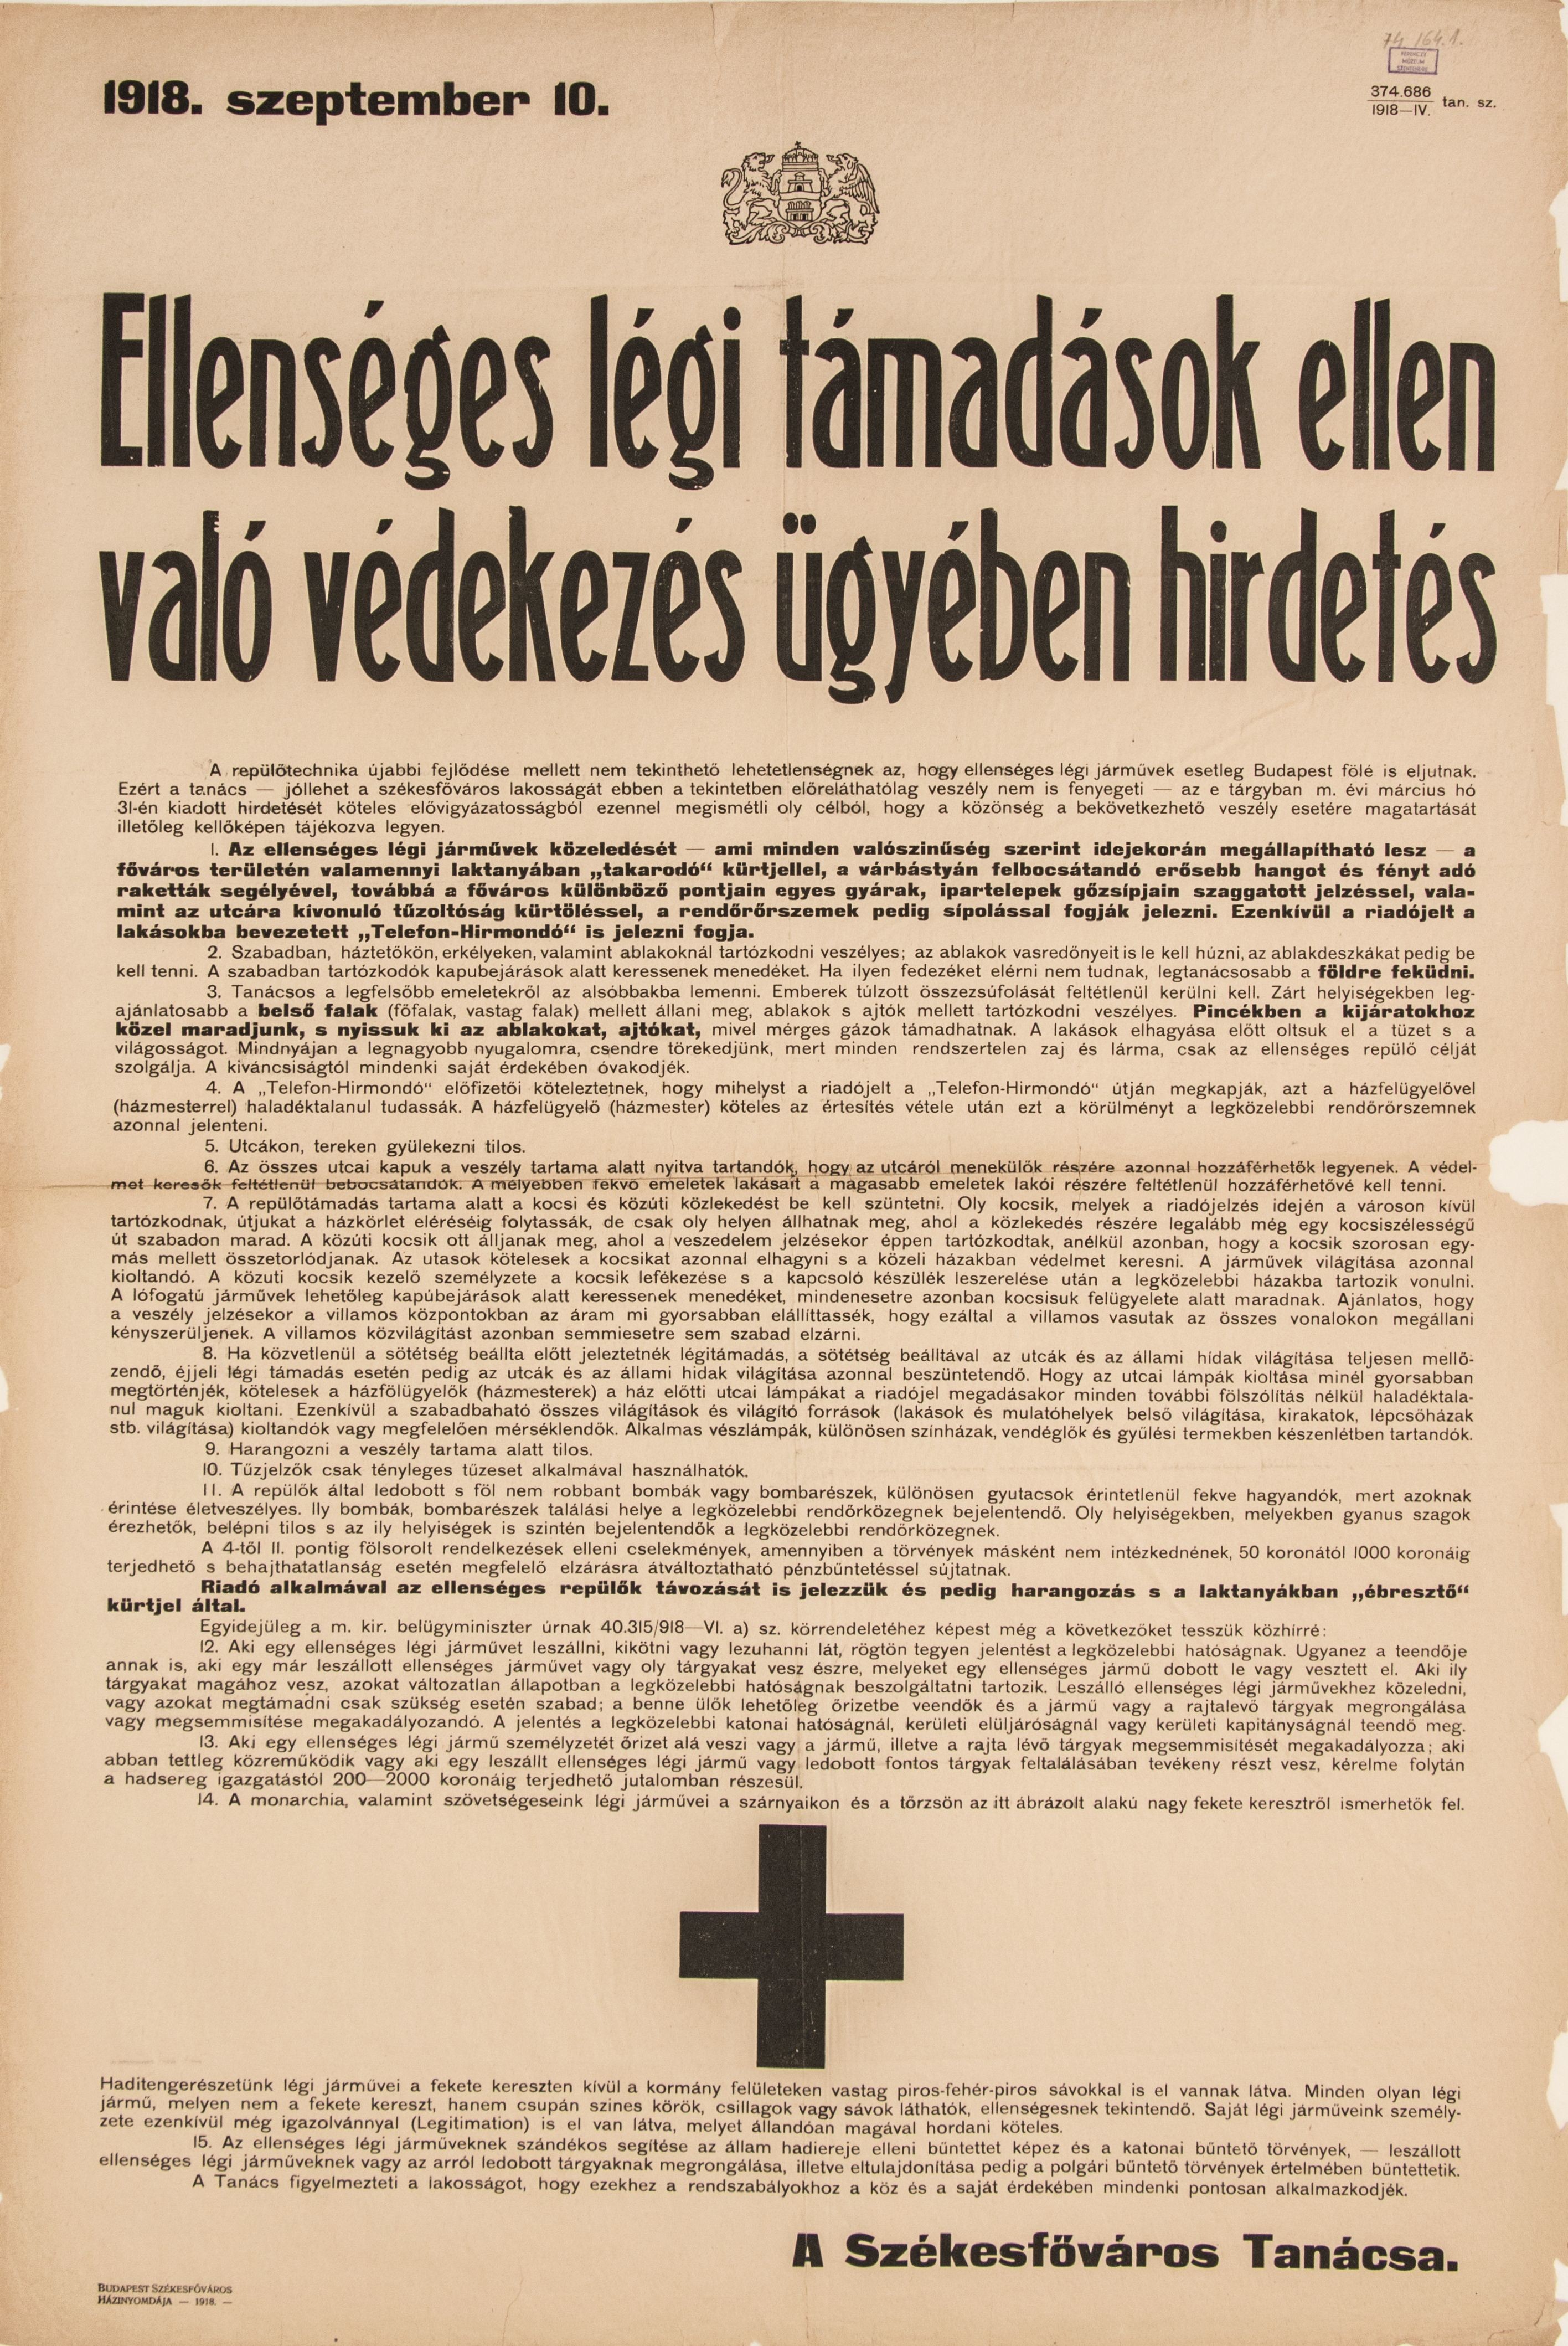 Ellenséges légitámadások elleni védekezés ügyében hirdetés, 1918.09.10. (Ferenczy Múzeumi Centrum CC BY-NC-SA)